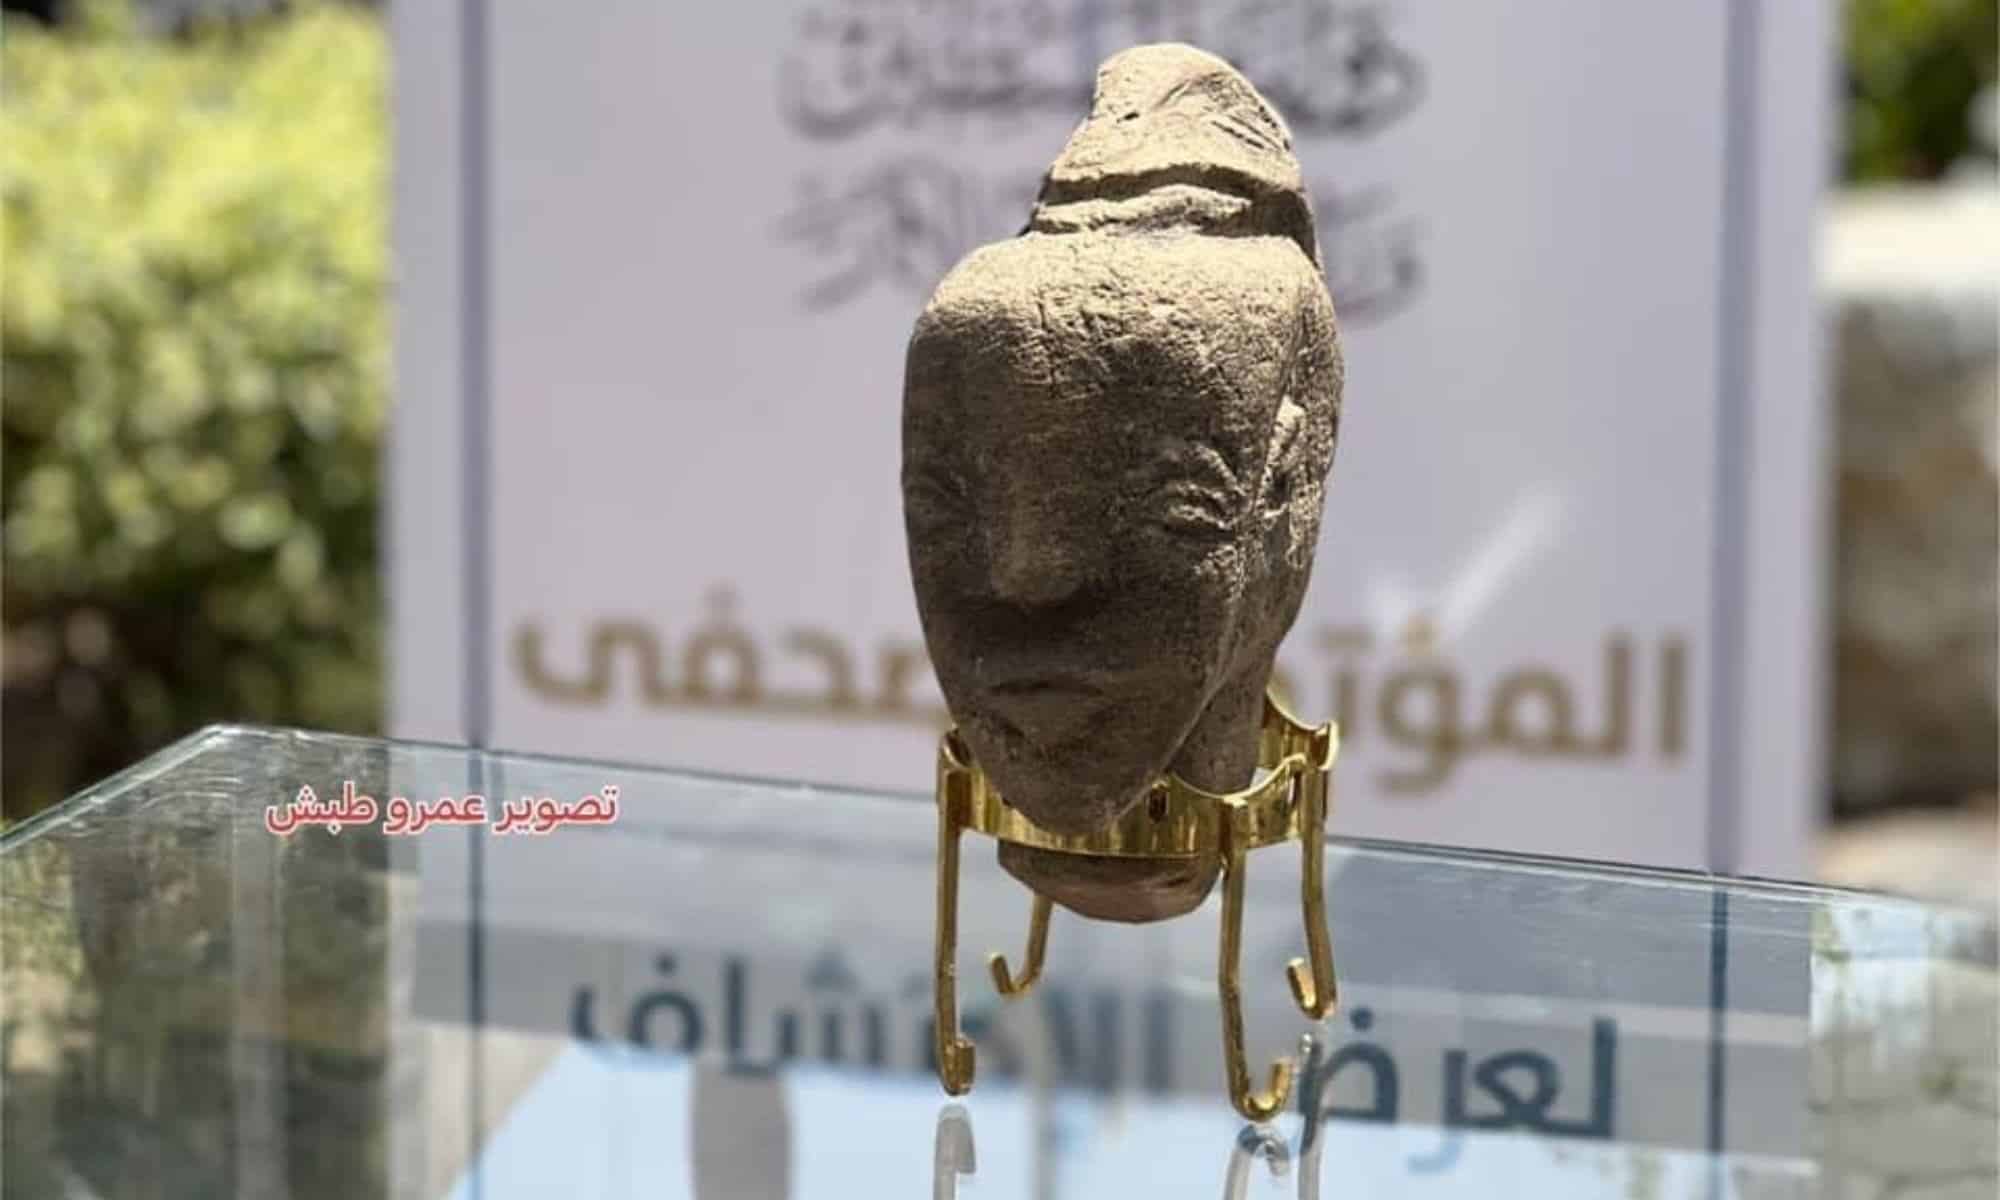 Το αγαλματίδιο εικονίζει την Ανάτ των Χαναναίων, θεά του έρωτα και της ομορφιάς, σύμφωνα με το τμήμα Αρχαιοτήτων της Γάζας / Φωτογραφία: Twitter